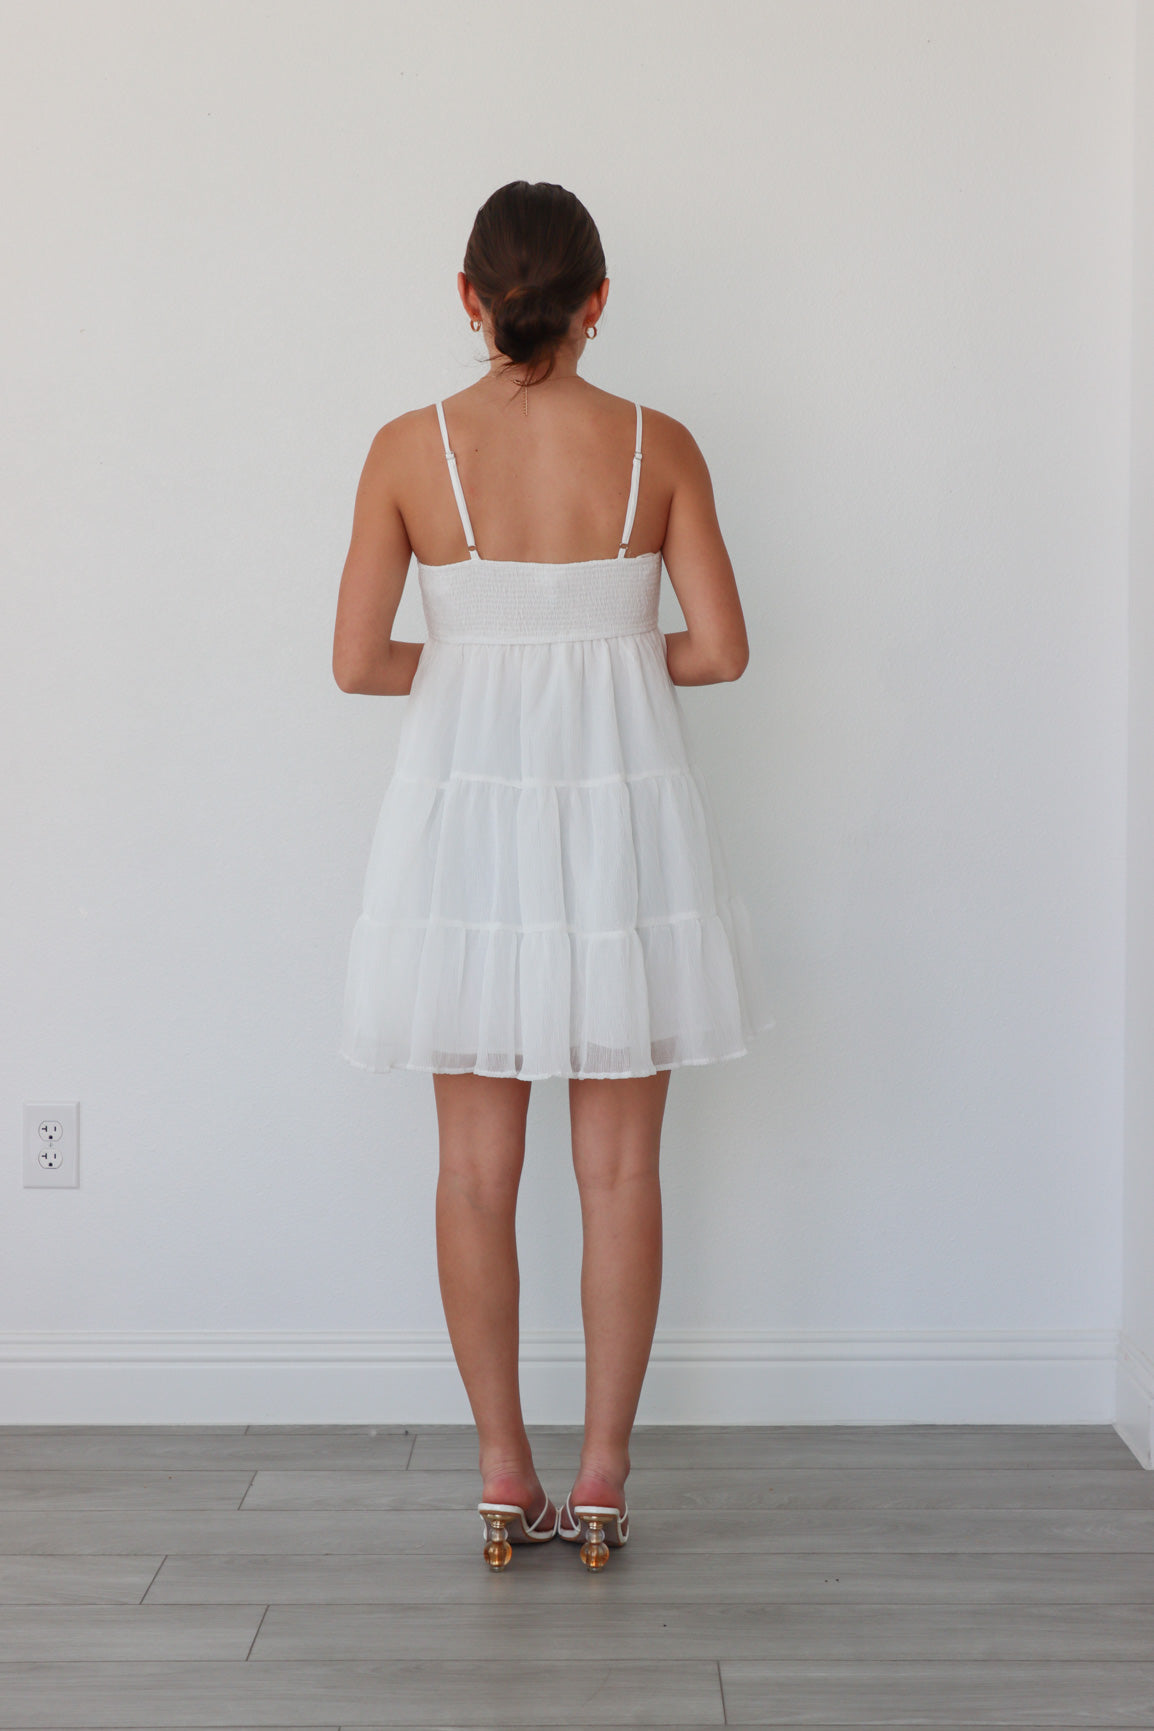 girl wearing white short dress 